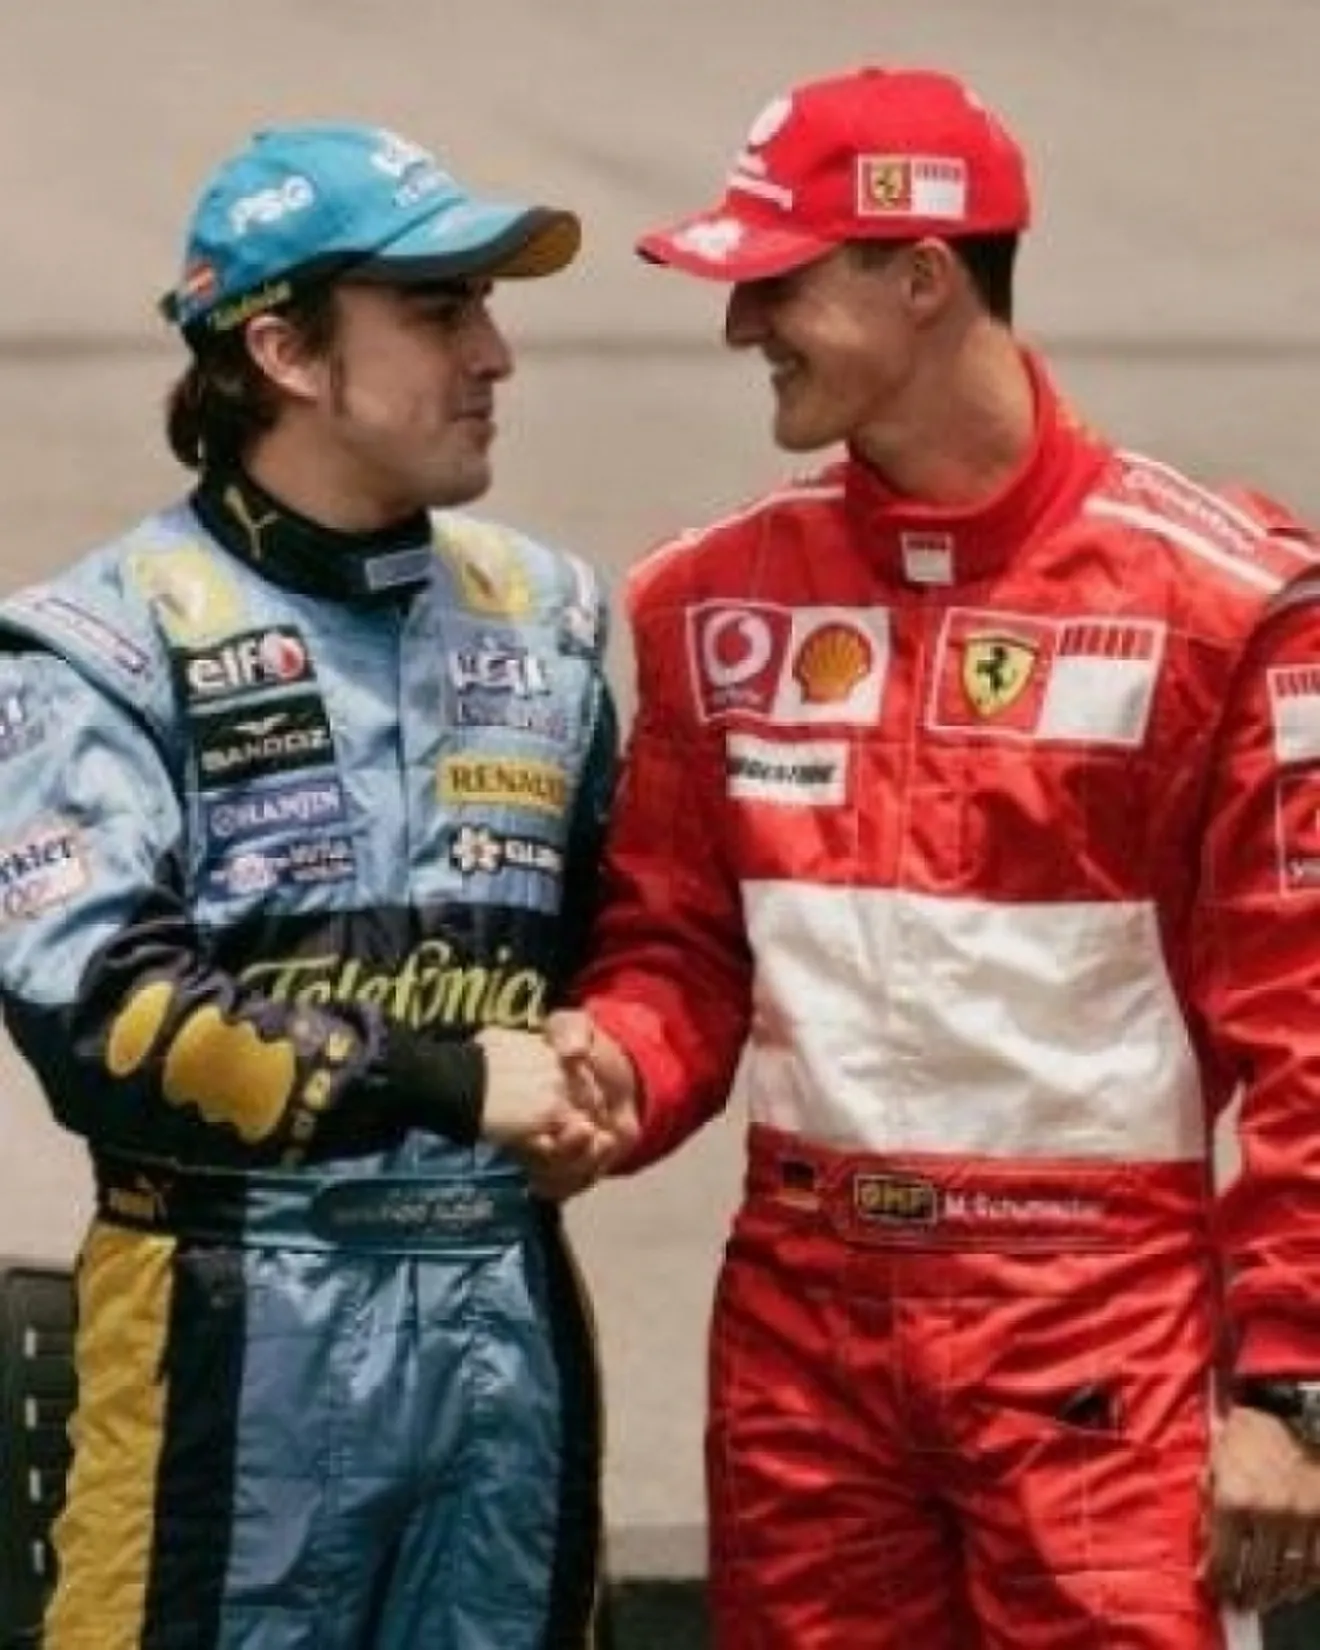 Lo más visto en Motor.es, Paralelismos entre Alonso y Schumacher. Noviembre 2010